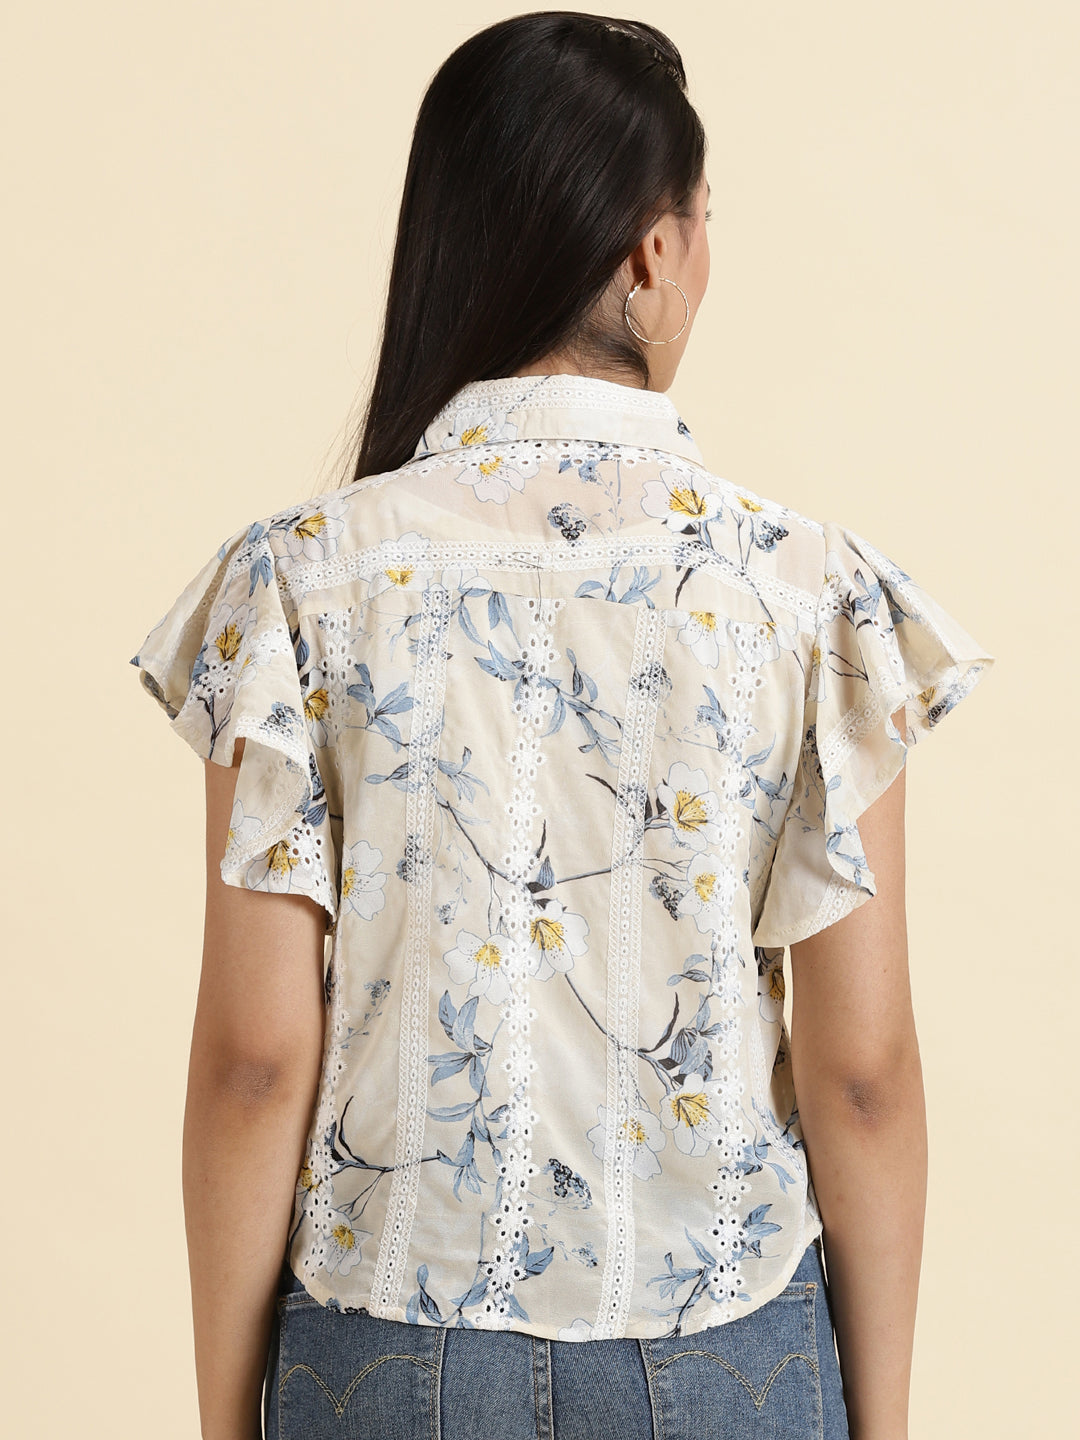 Women's Cream Printed Shirt Style Top